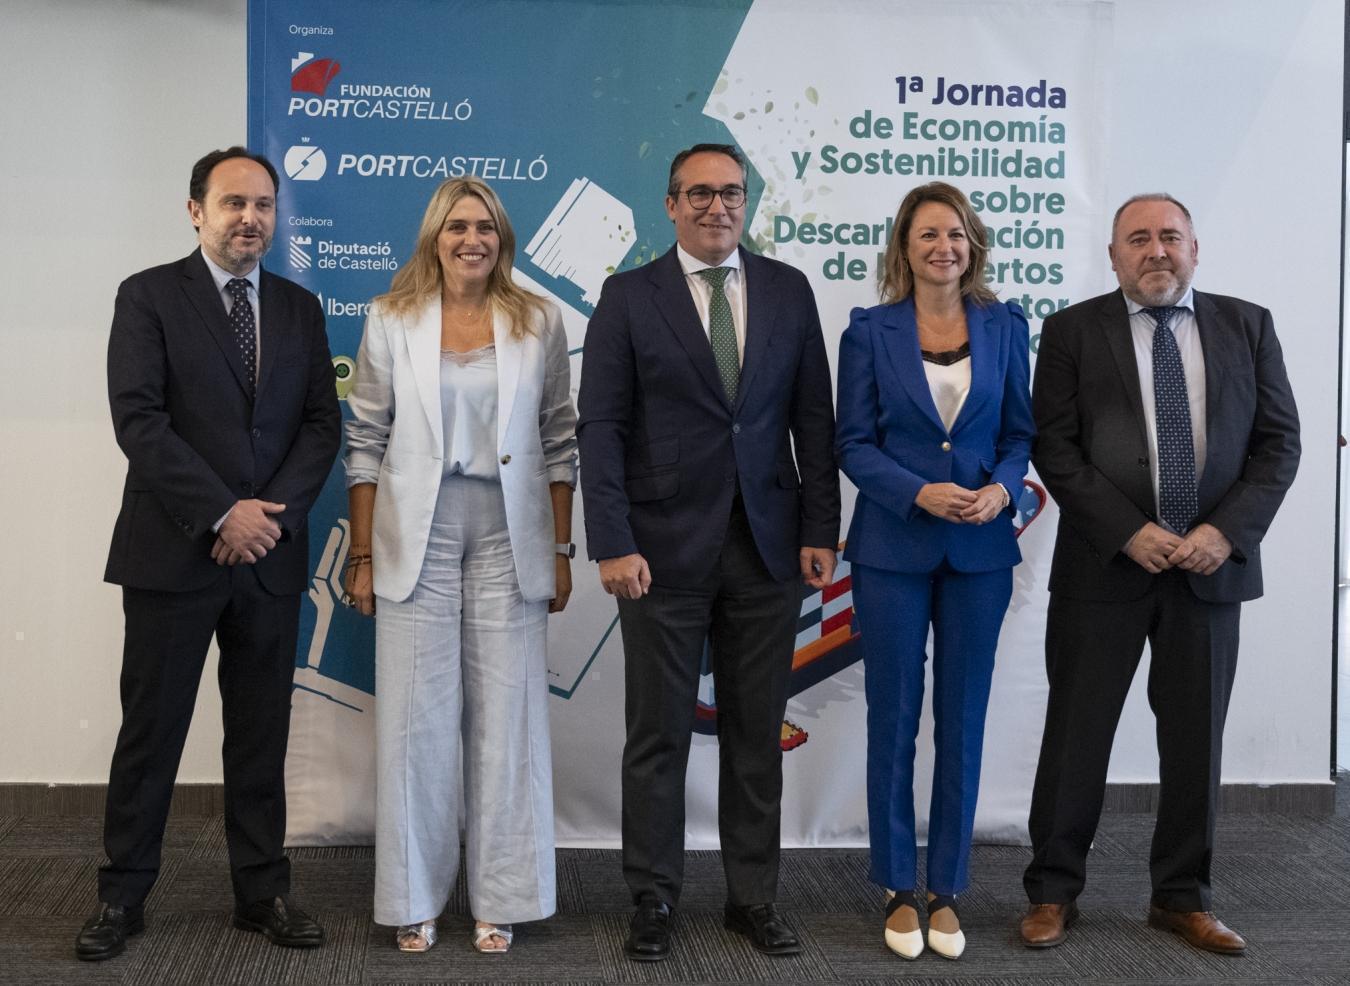 Marta Barrachina: “La colaboración conjunta entre la Diputación de Castellón y el Puerto es una alianza estratégica destinada a impulsar el desarrollo sostenible de nuestra provincia”